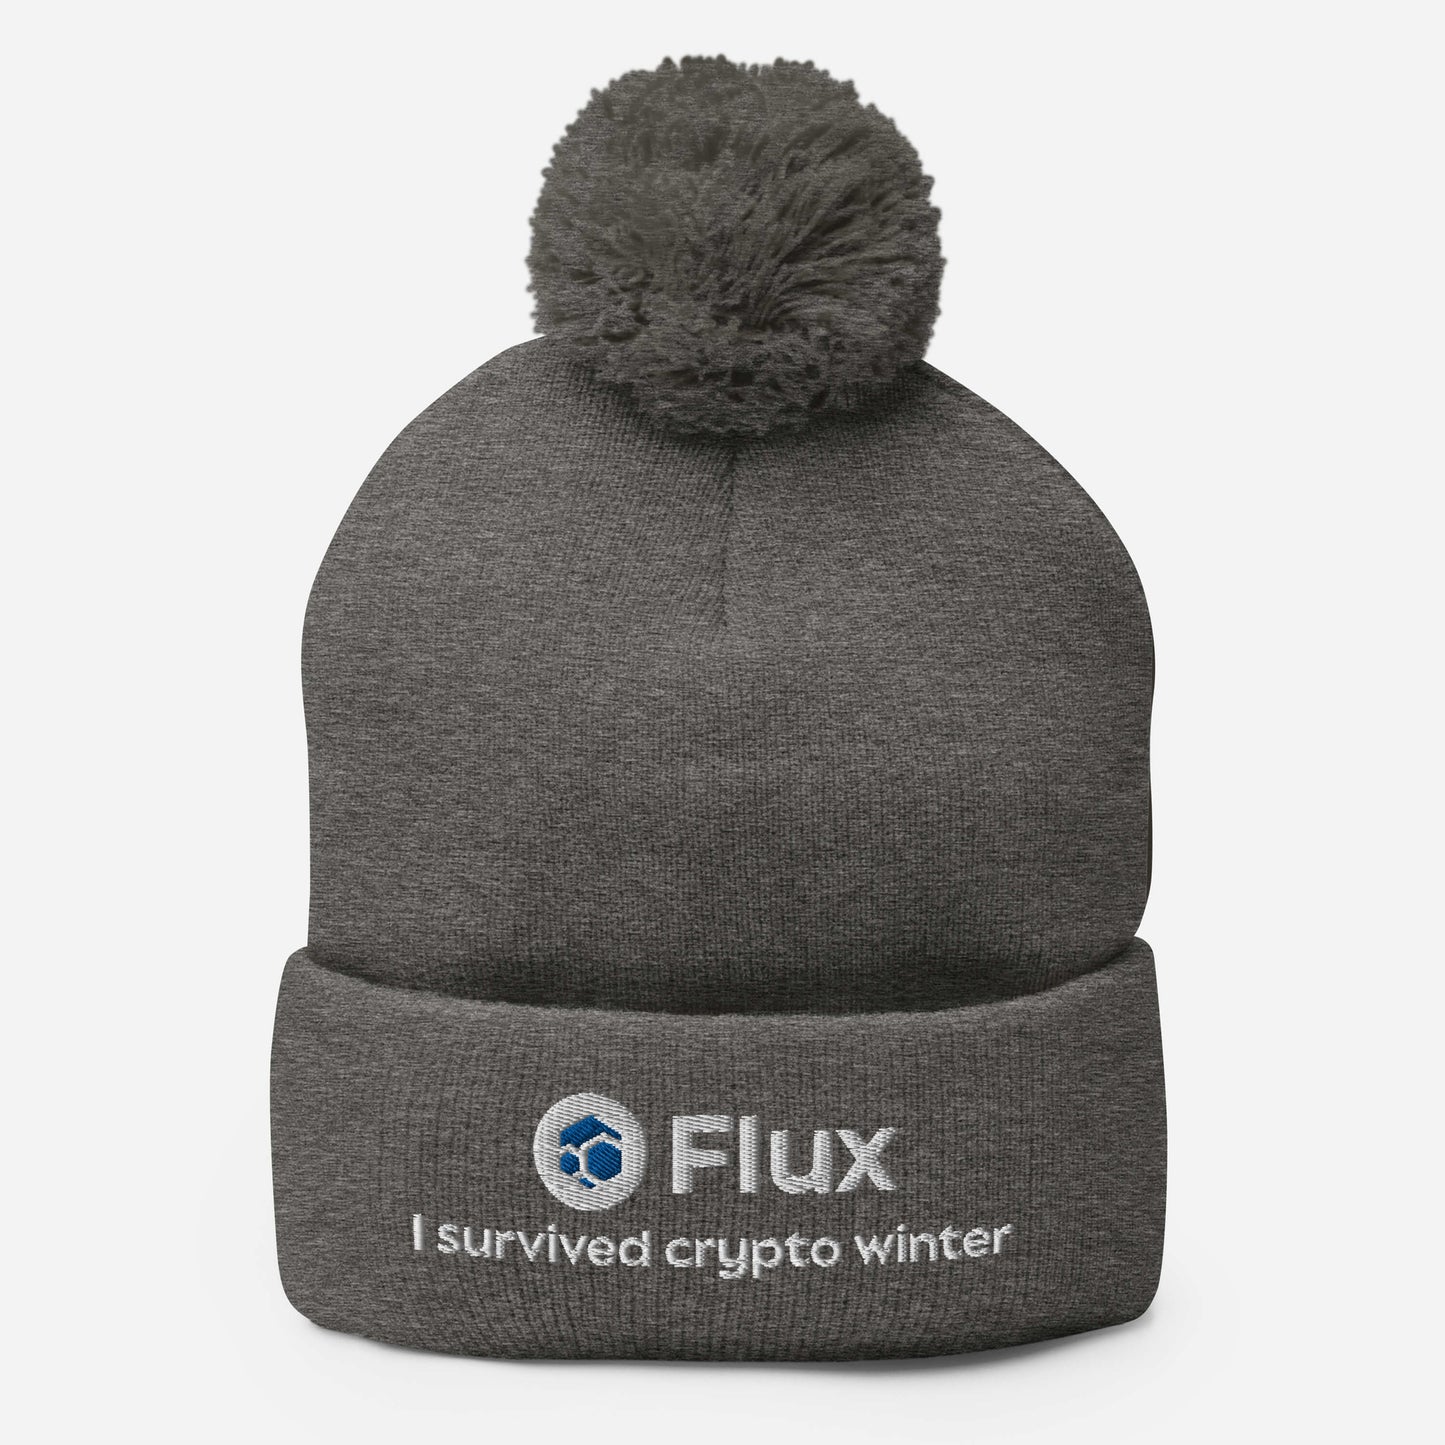 FLUX "I Survived Crypto Winter" Pom Pom Beanie